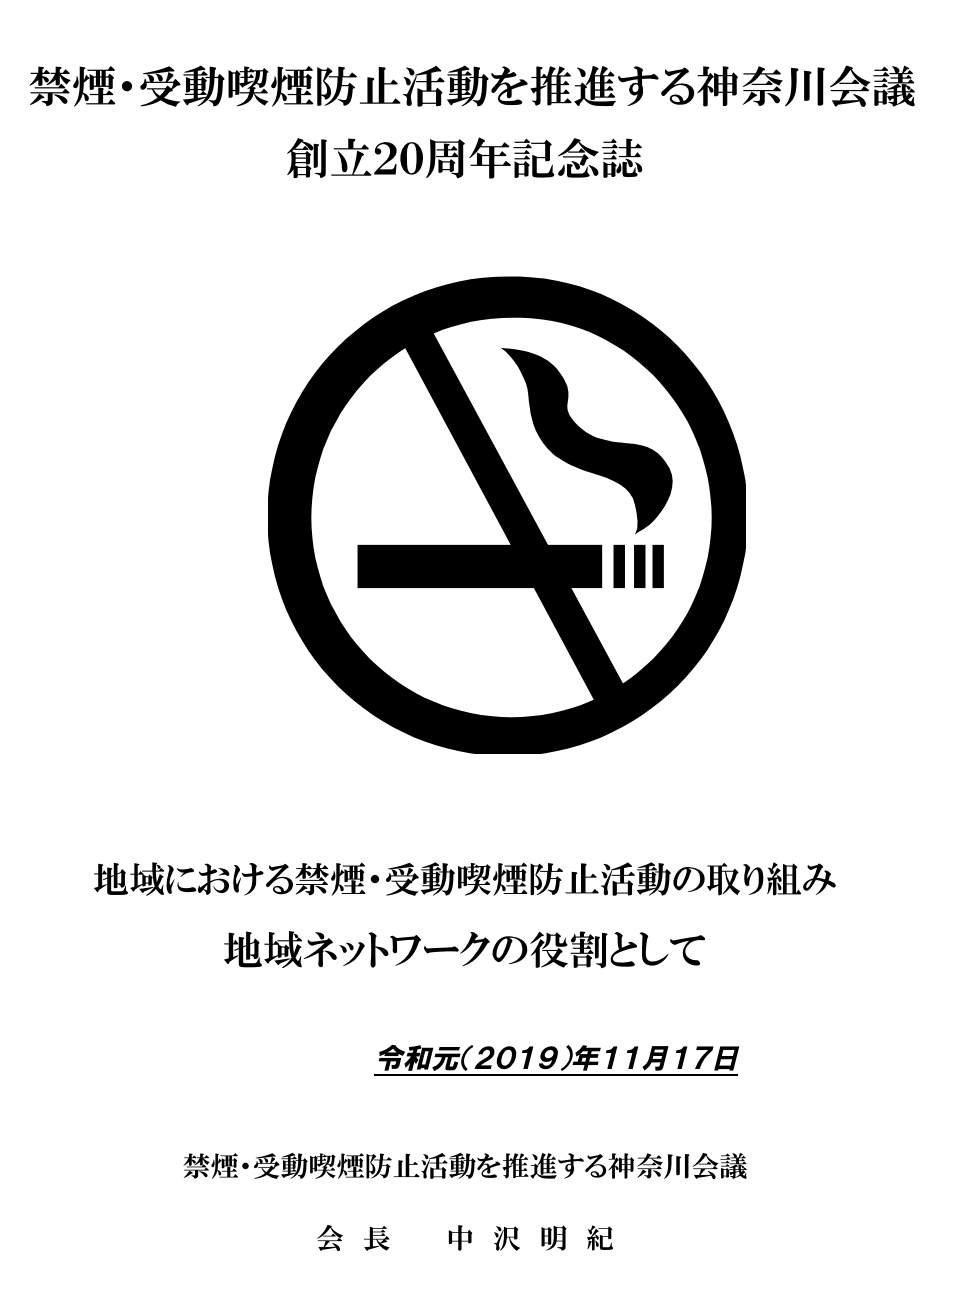 禁煙 受動喫煙防止活動を推進する神奈川会議 周年記念誌 第一部 会長よりのメッセージ 神奈川会議